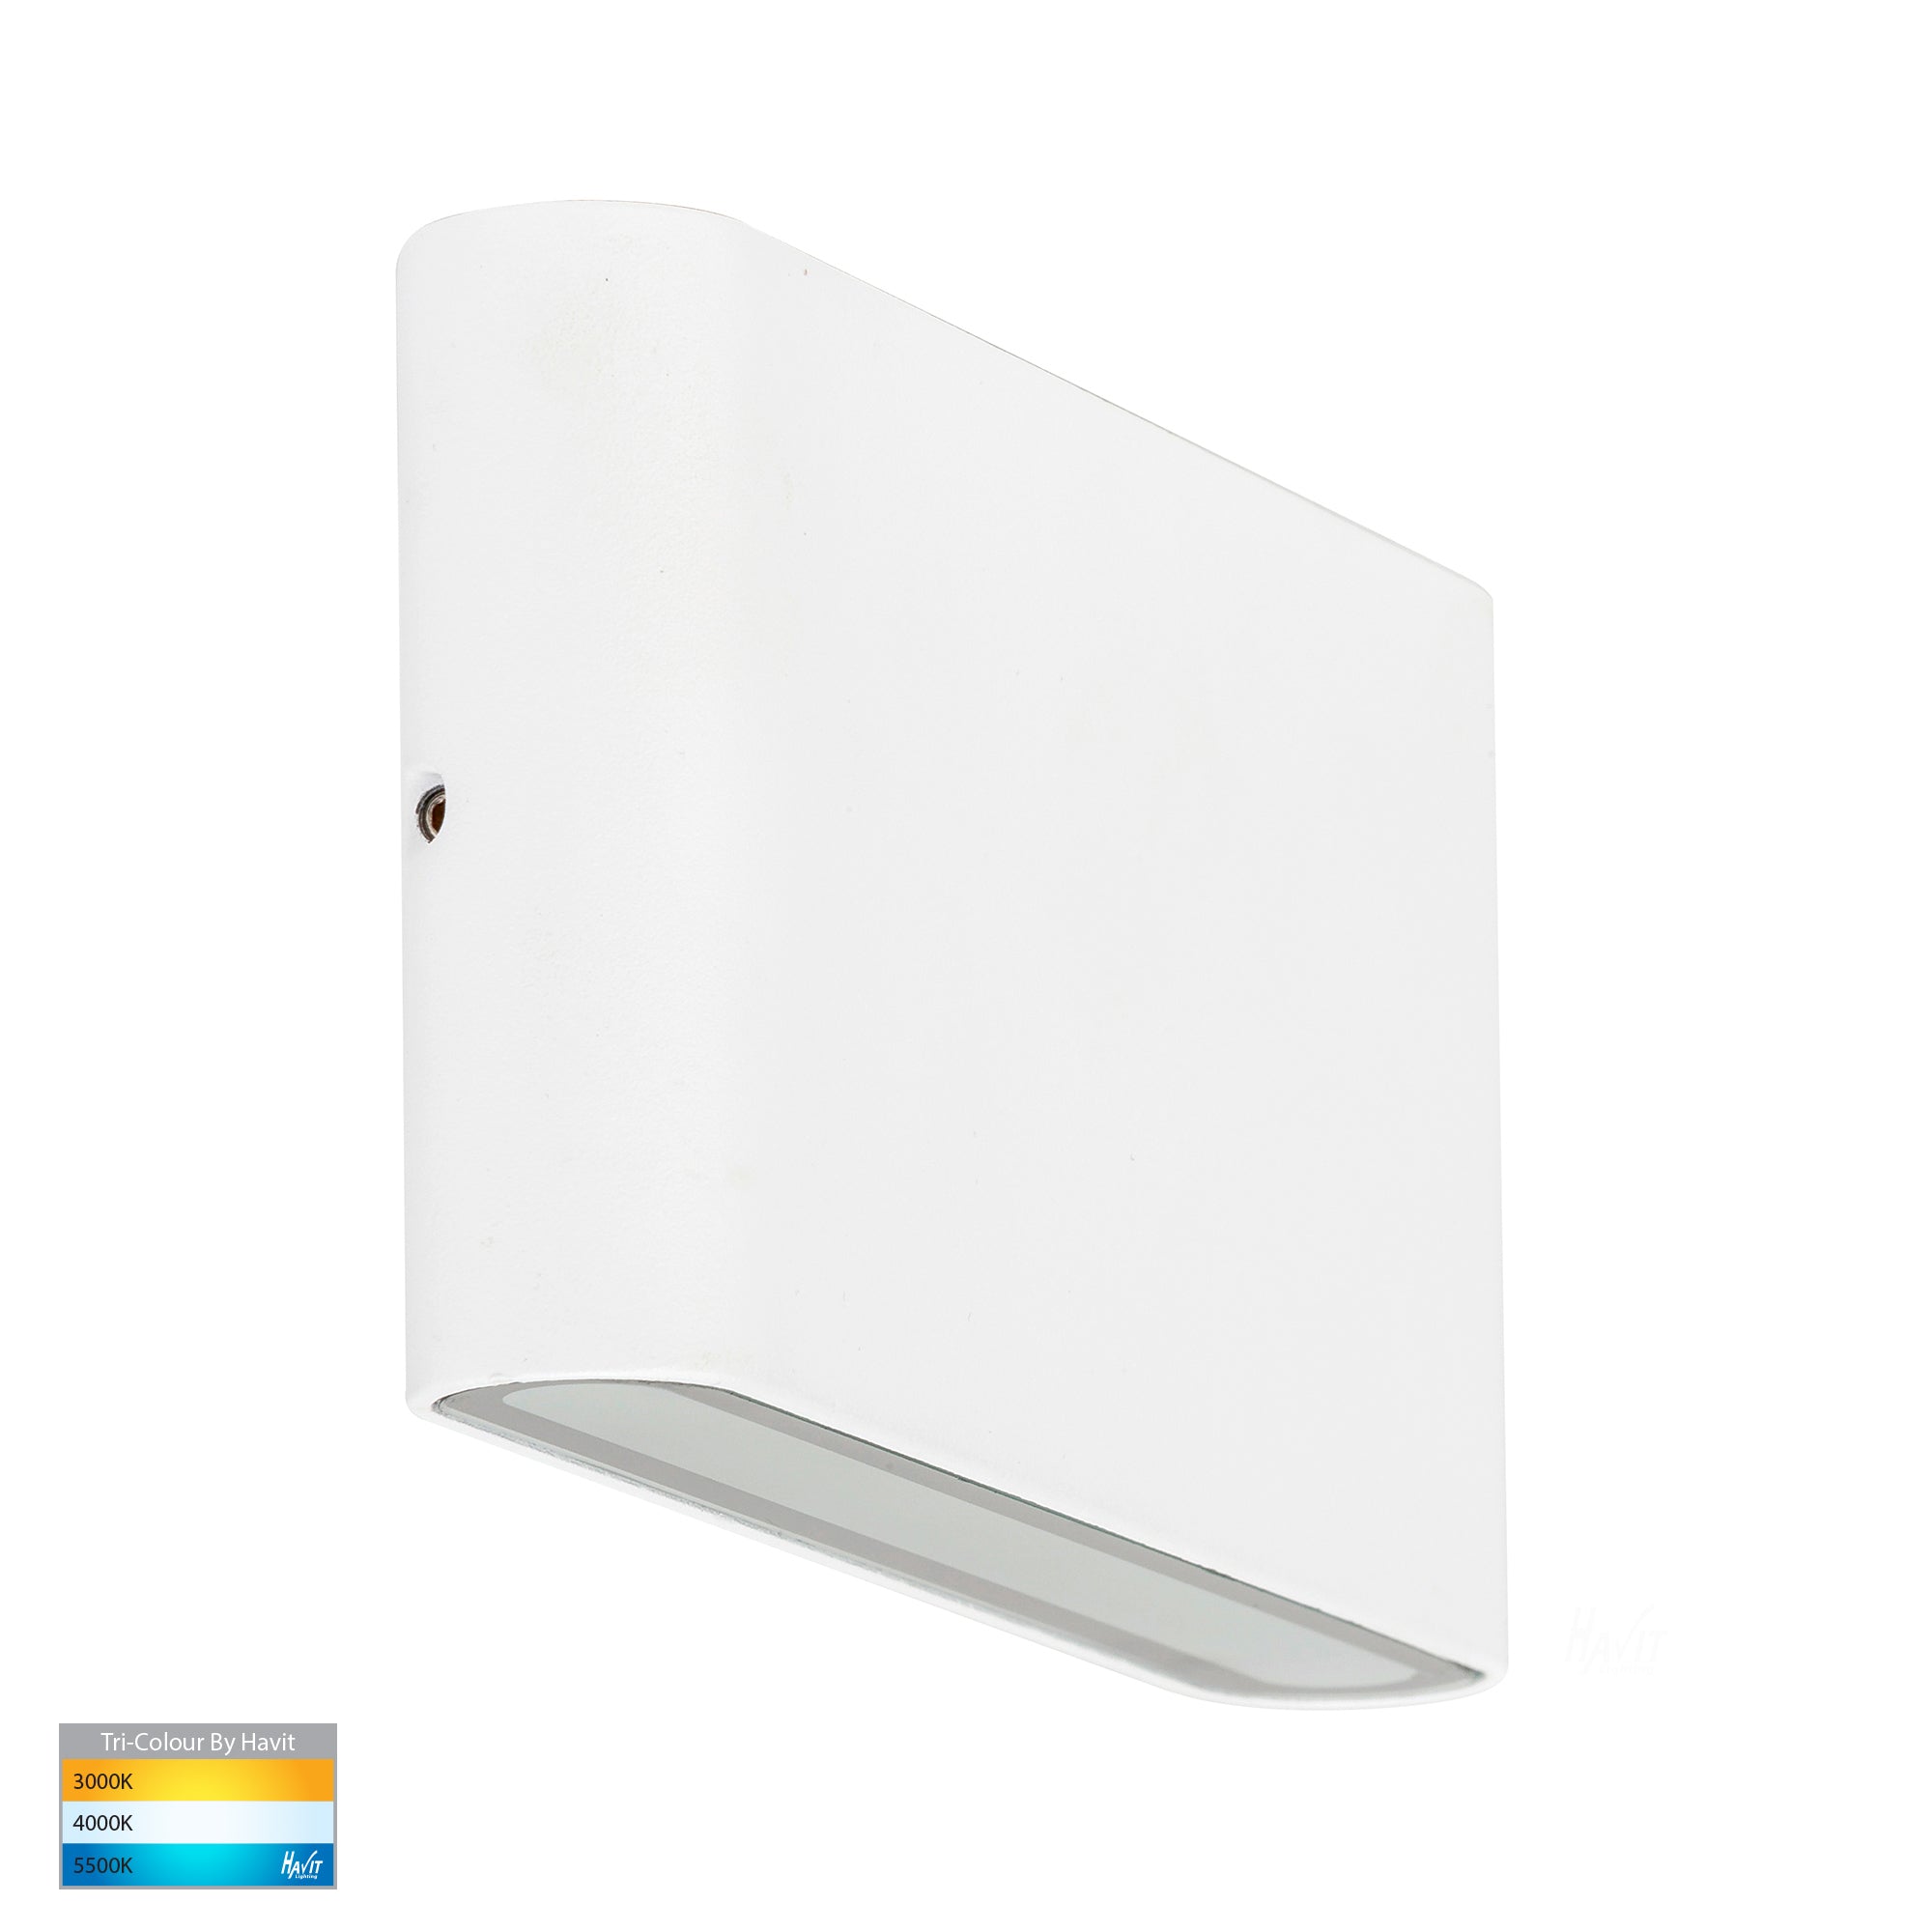 HV3644T-WHT - Lisse White Up & Down TRI Colour LED Wall Light